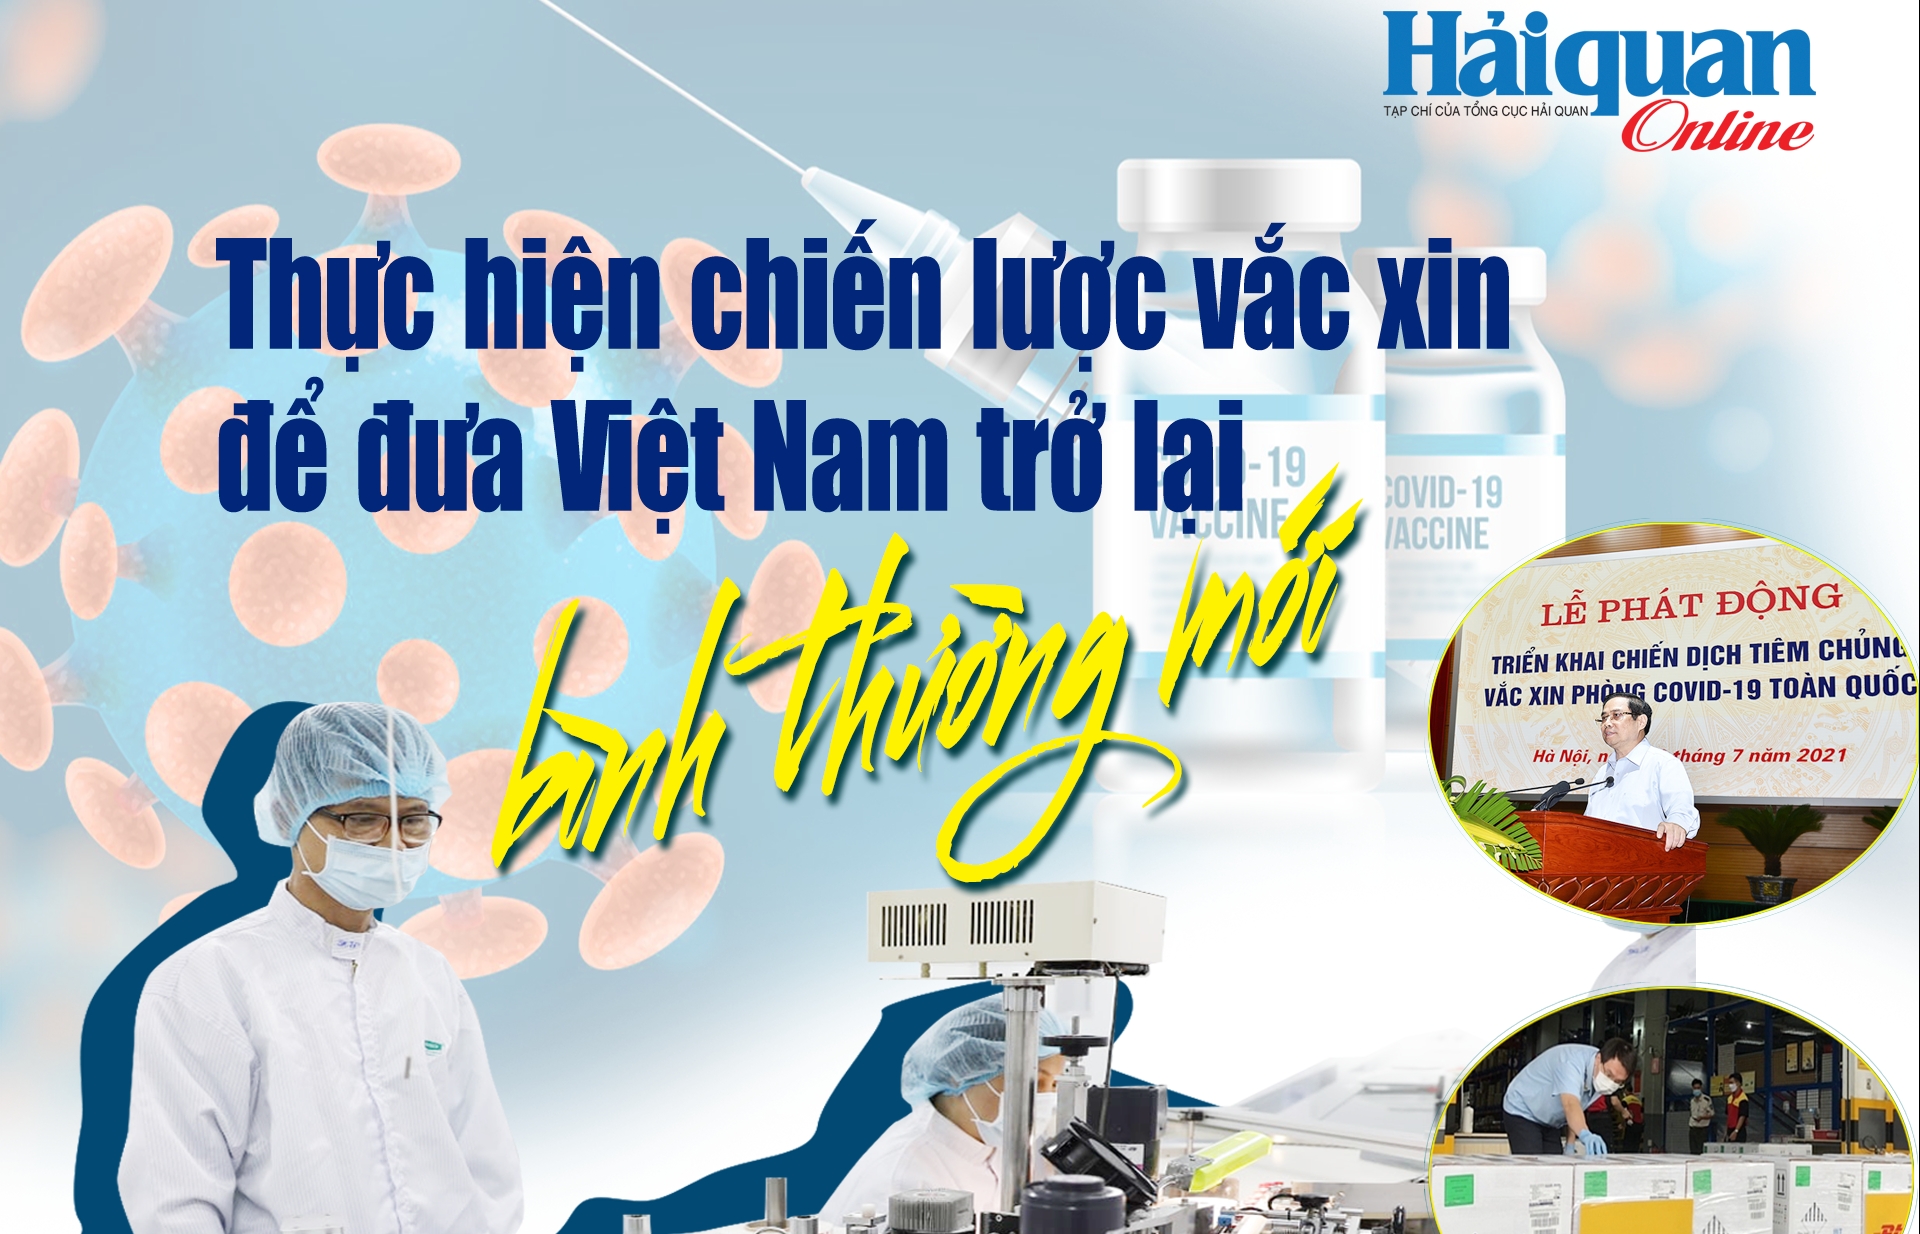 MEGASTORY: Thực hiện chiến lược vắc xin để đưa Việt Nam trở lại bình thường mới